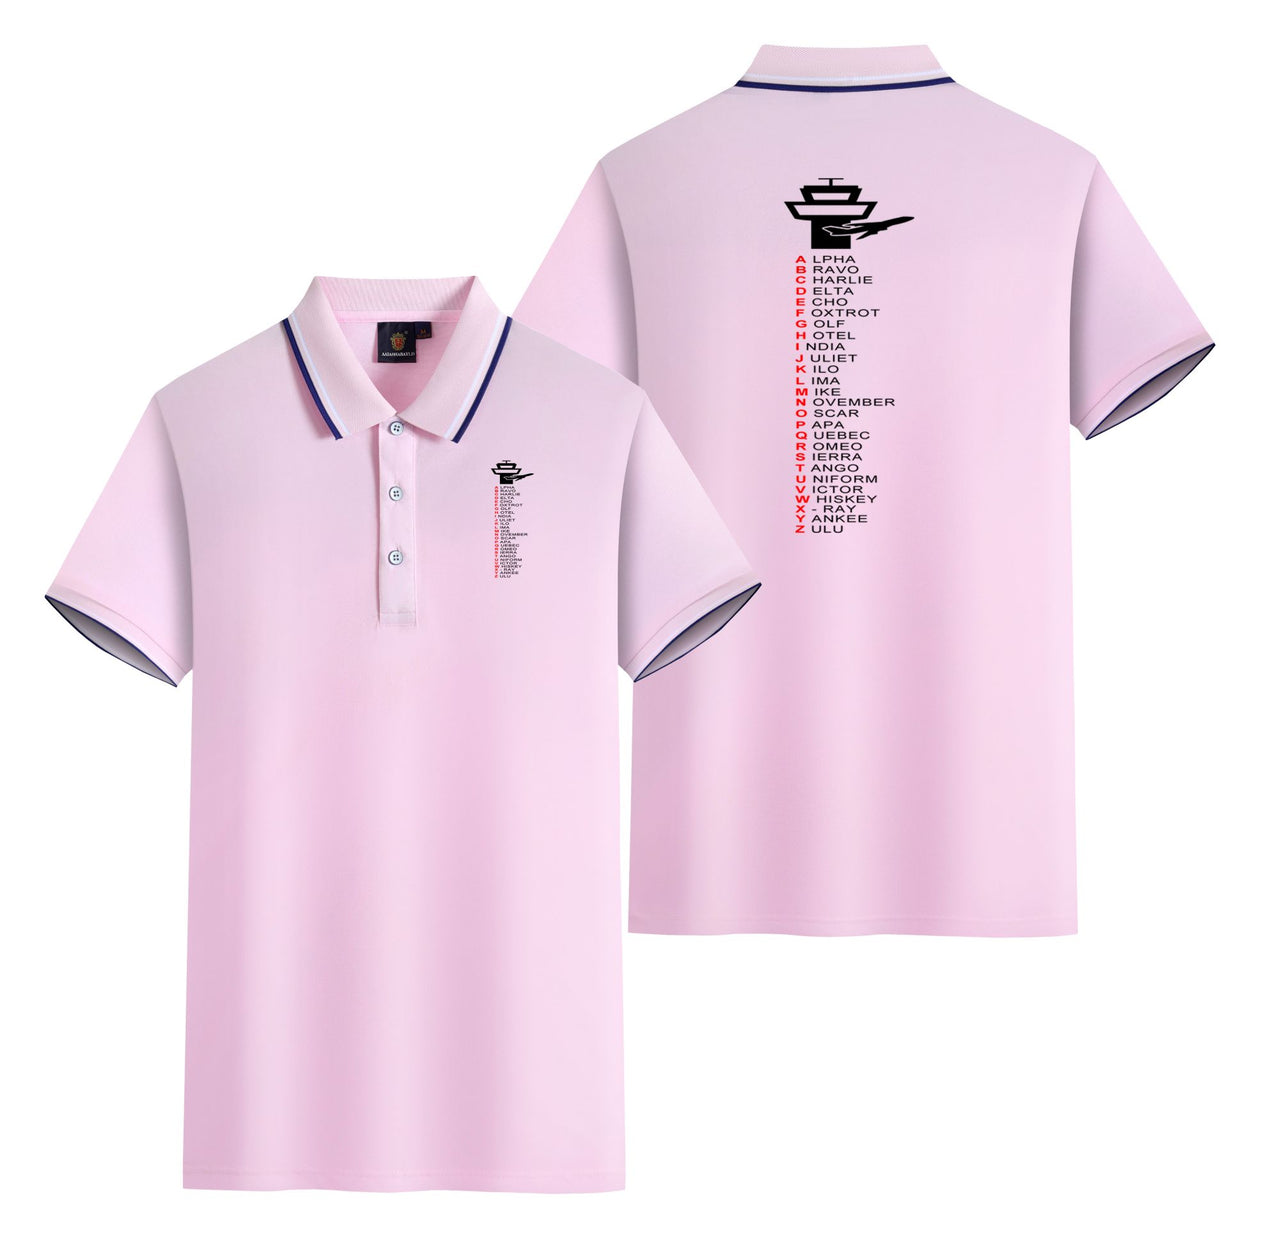 Aviation Alphabet Designed Stylish Polo T-Shirts (Double-Side)